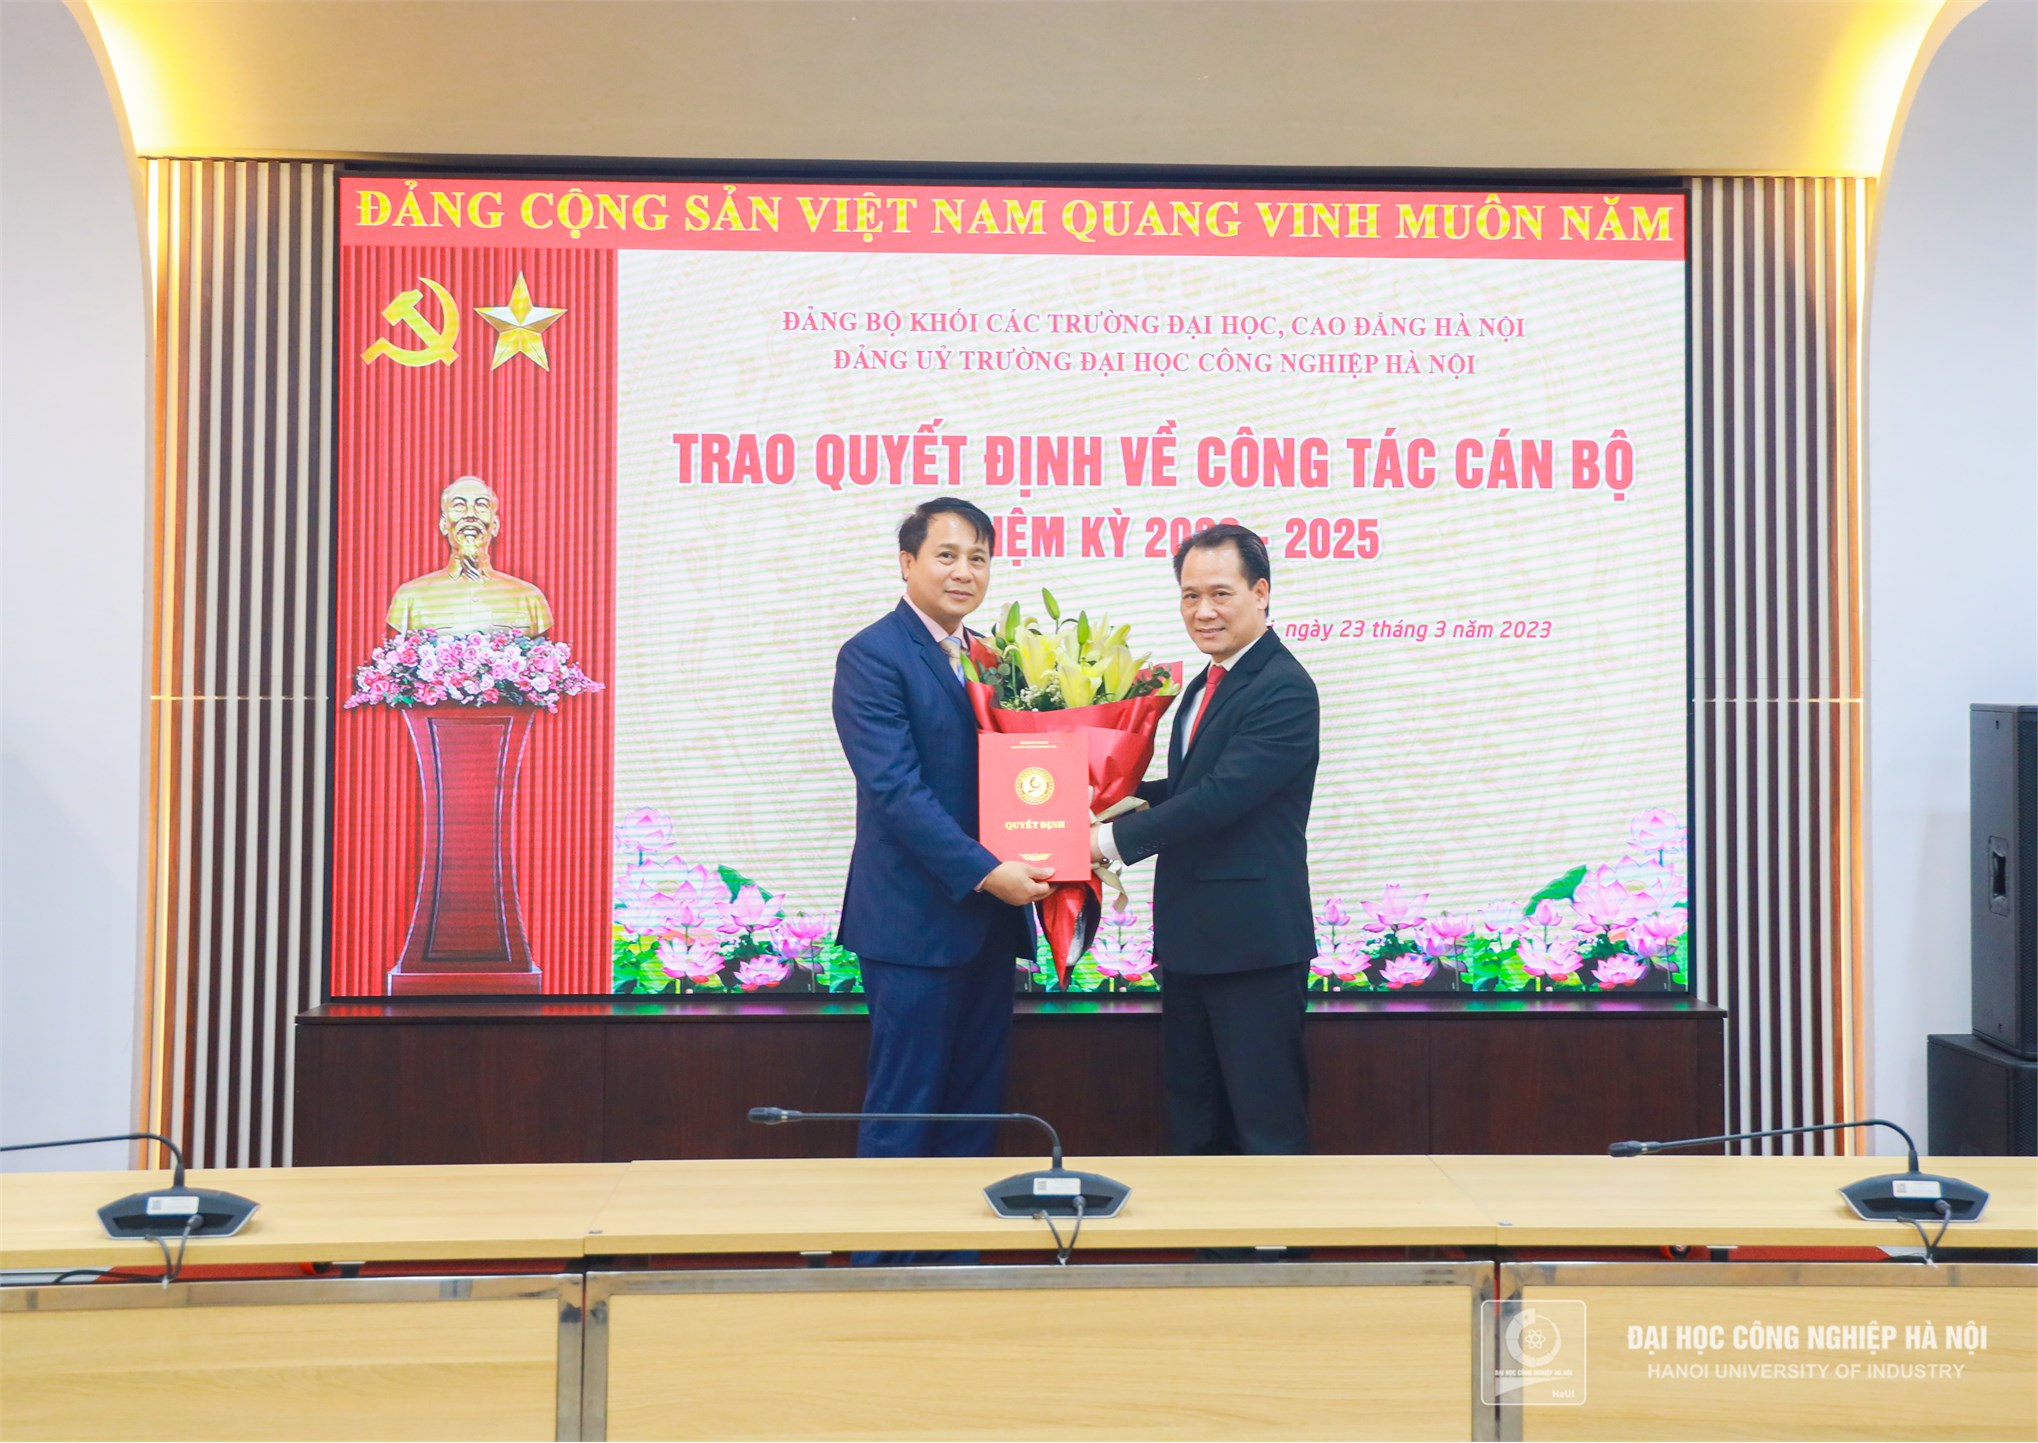 Đồng chí Lê Hồng Quân giữ chức Bí thư Đảng ủy Trường Đại học Công nghiệp Hà Nội